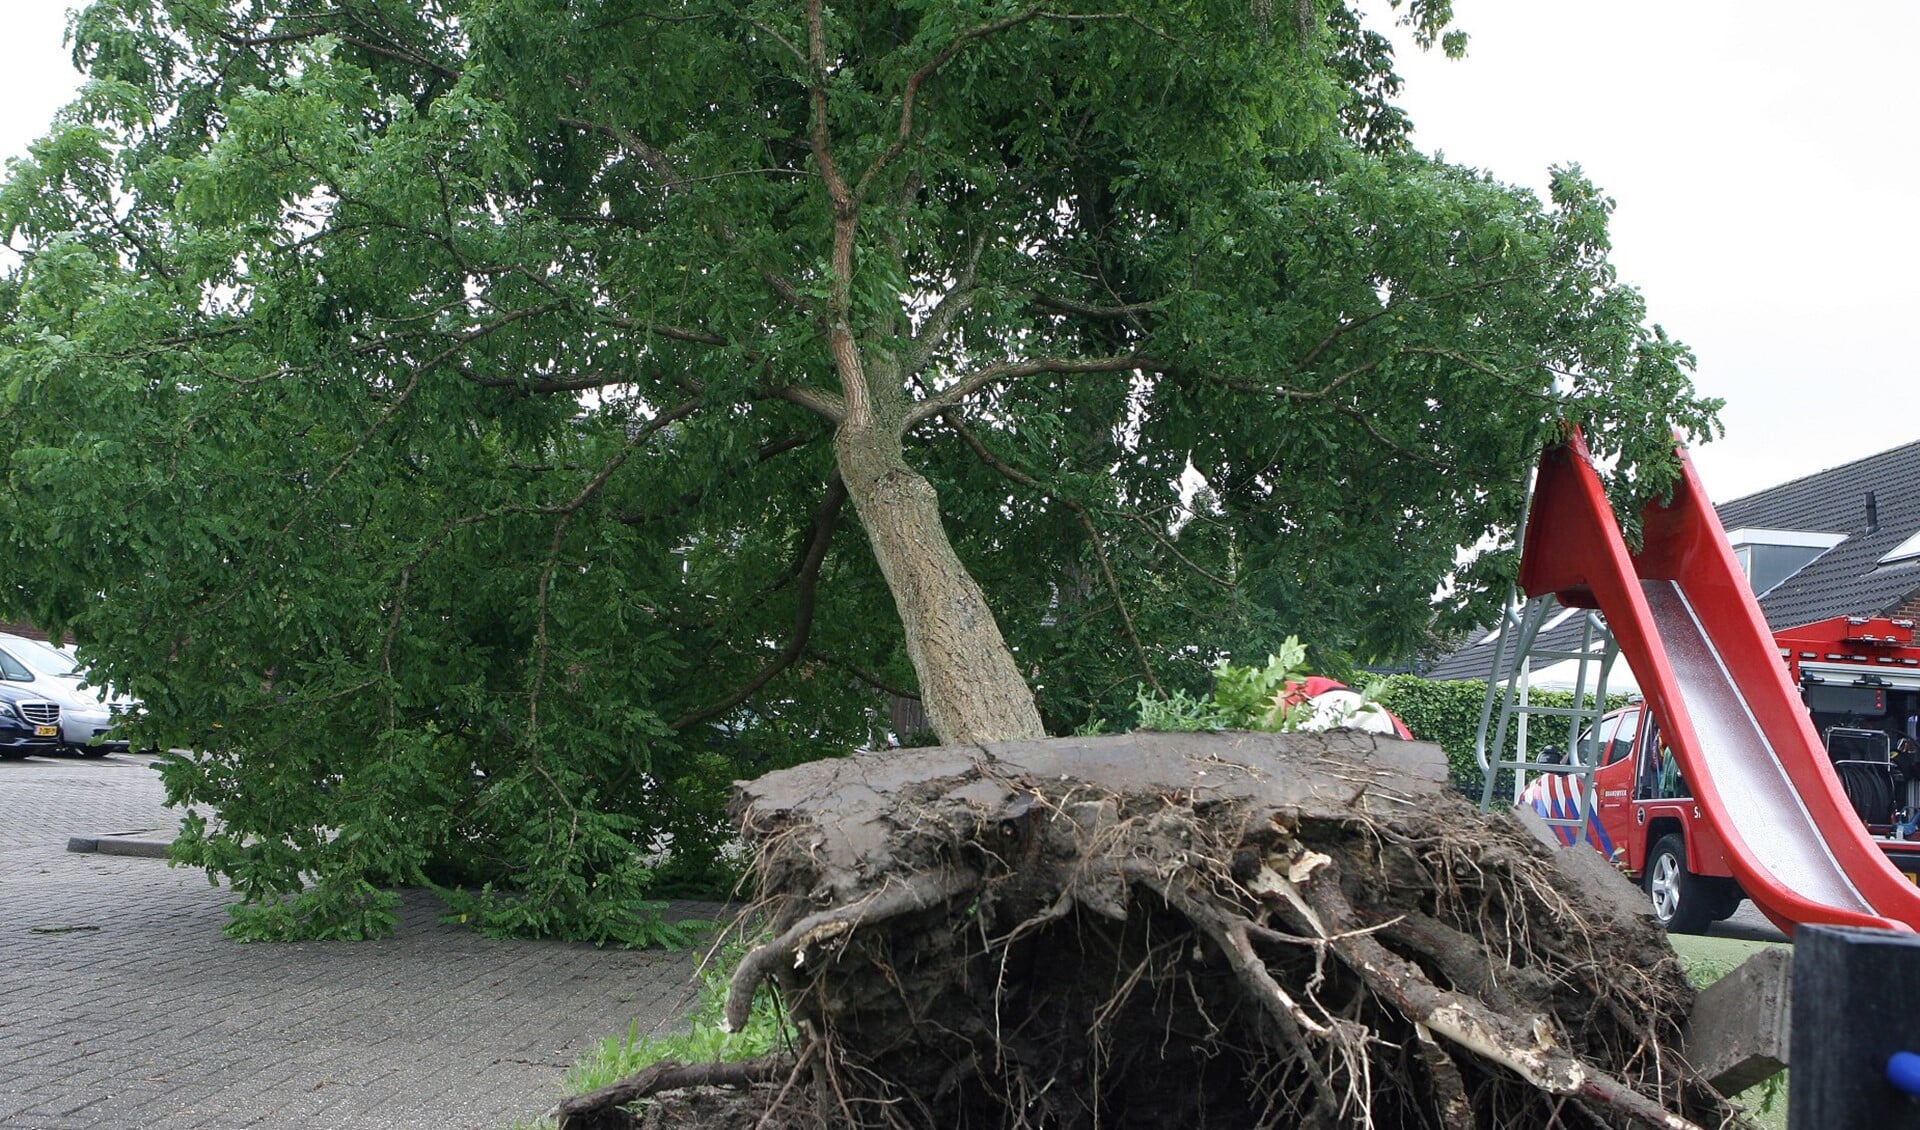 De boom werd door de zware storm geheel ontworteld